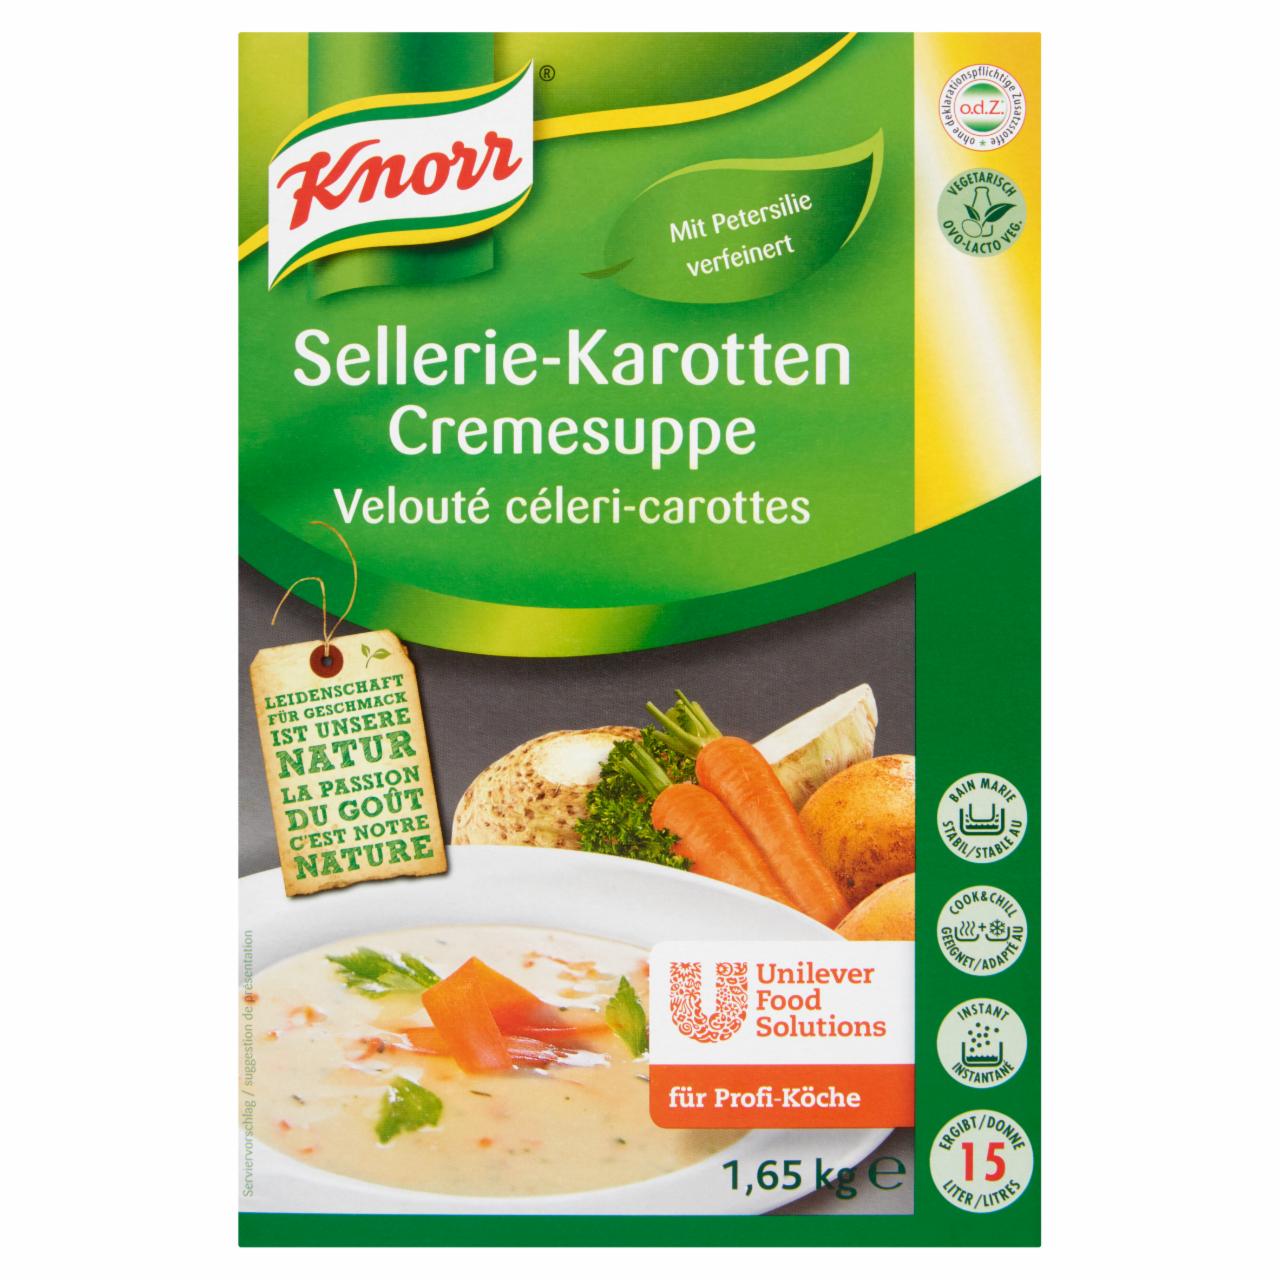 Képek - Knorr zöldségkrémleves 1,65 kg